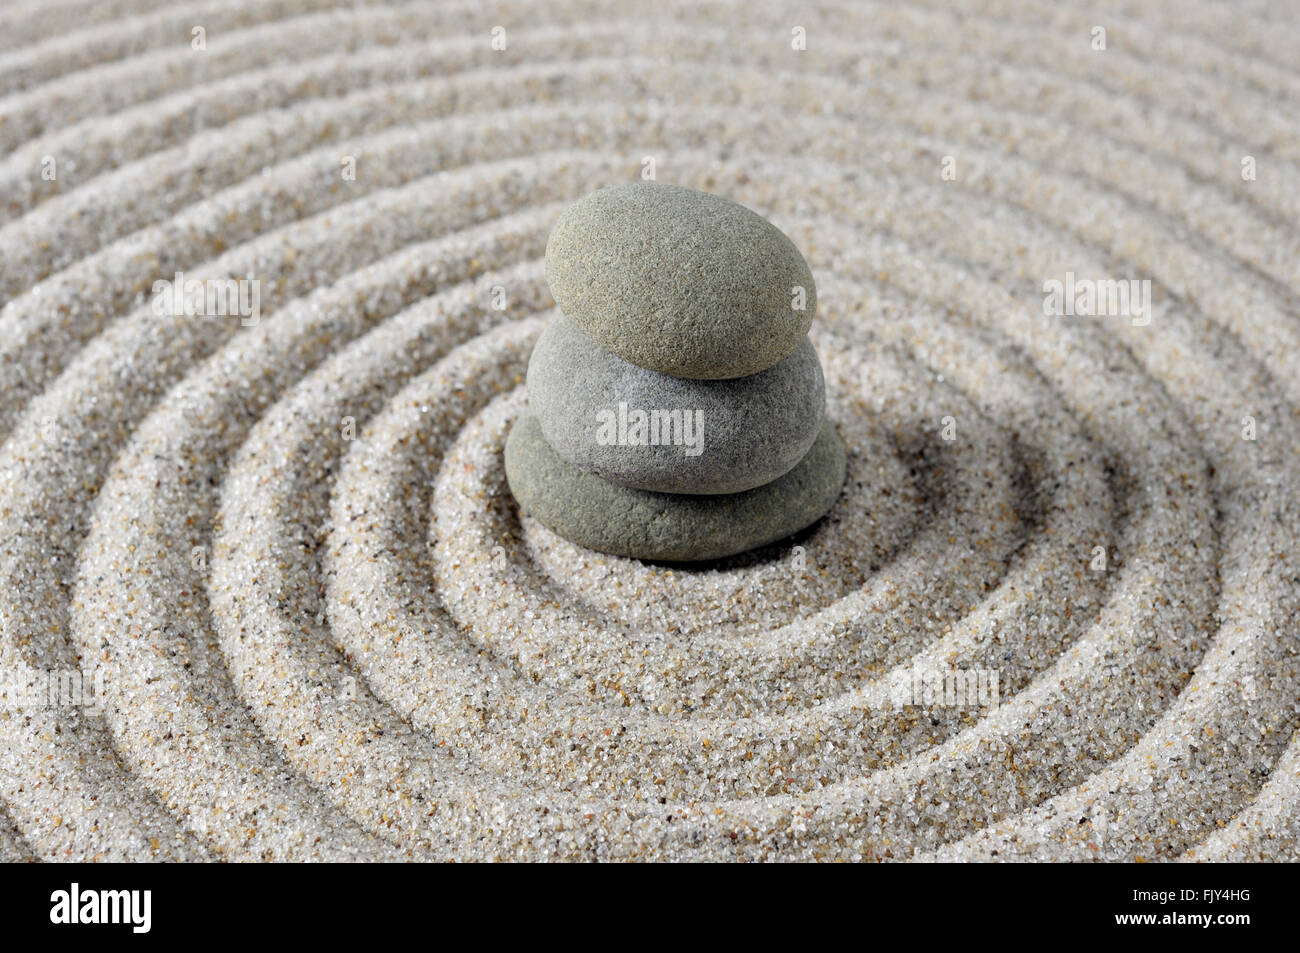 Piedras Zen en un rastrillado de arena para la meditación spa, masaje, concepto wellness, el equilibrio, la armonía, la espiritualidad y el concepto de relajación Foto de stock